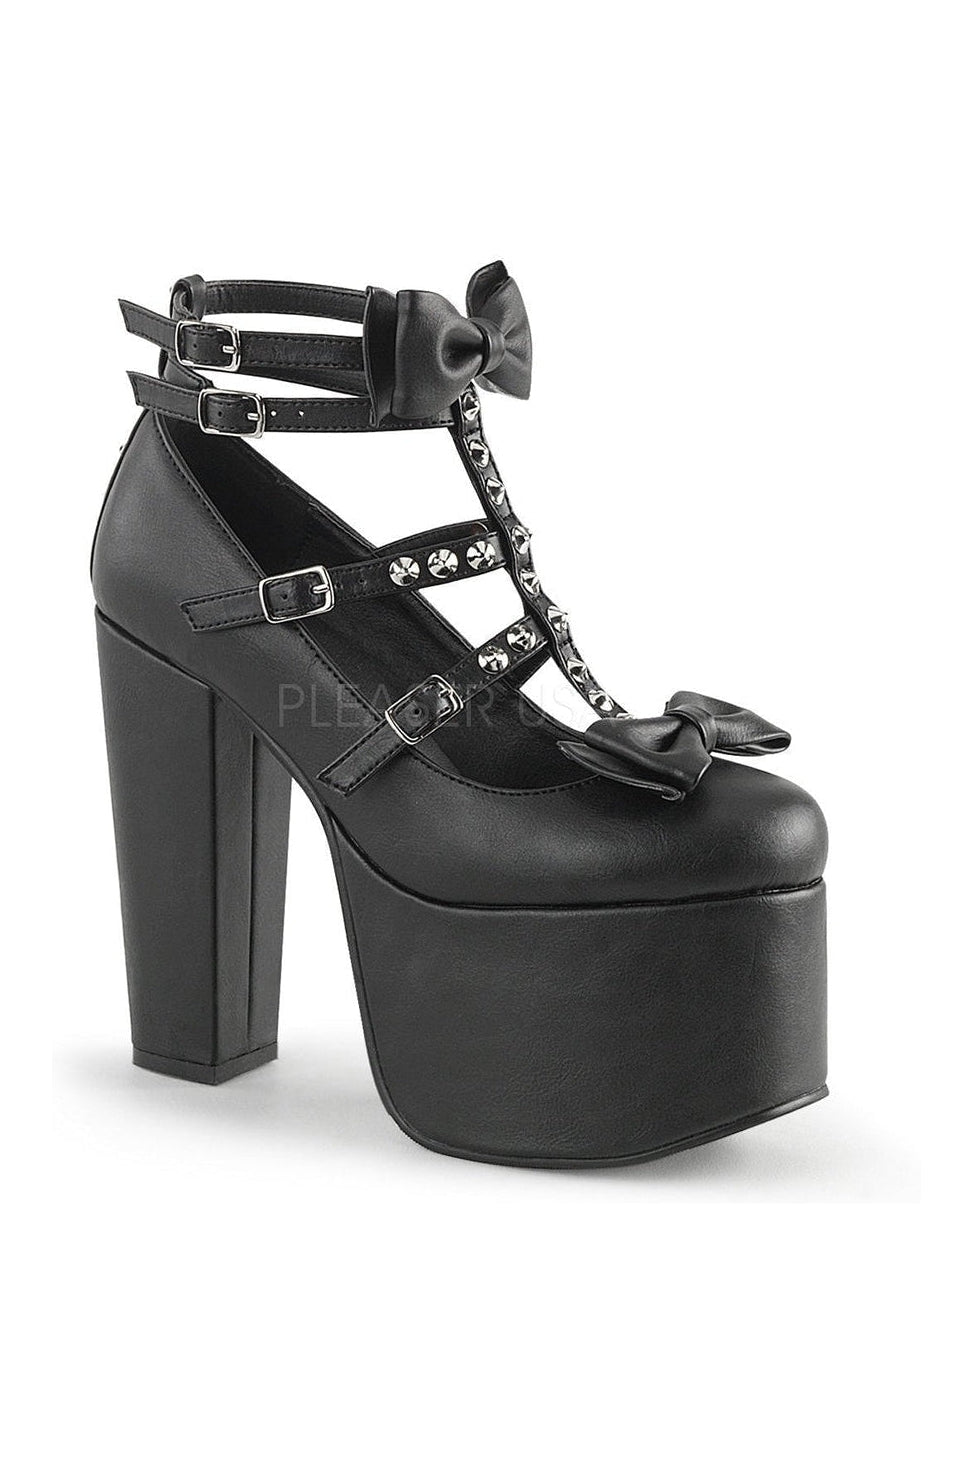 TORMENT-600 Demonia Pump | Black Faux Leather-Demonia-Black-Ankle Boots-SEXYSHOES.COM